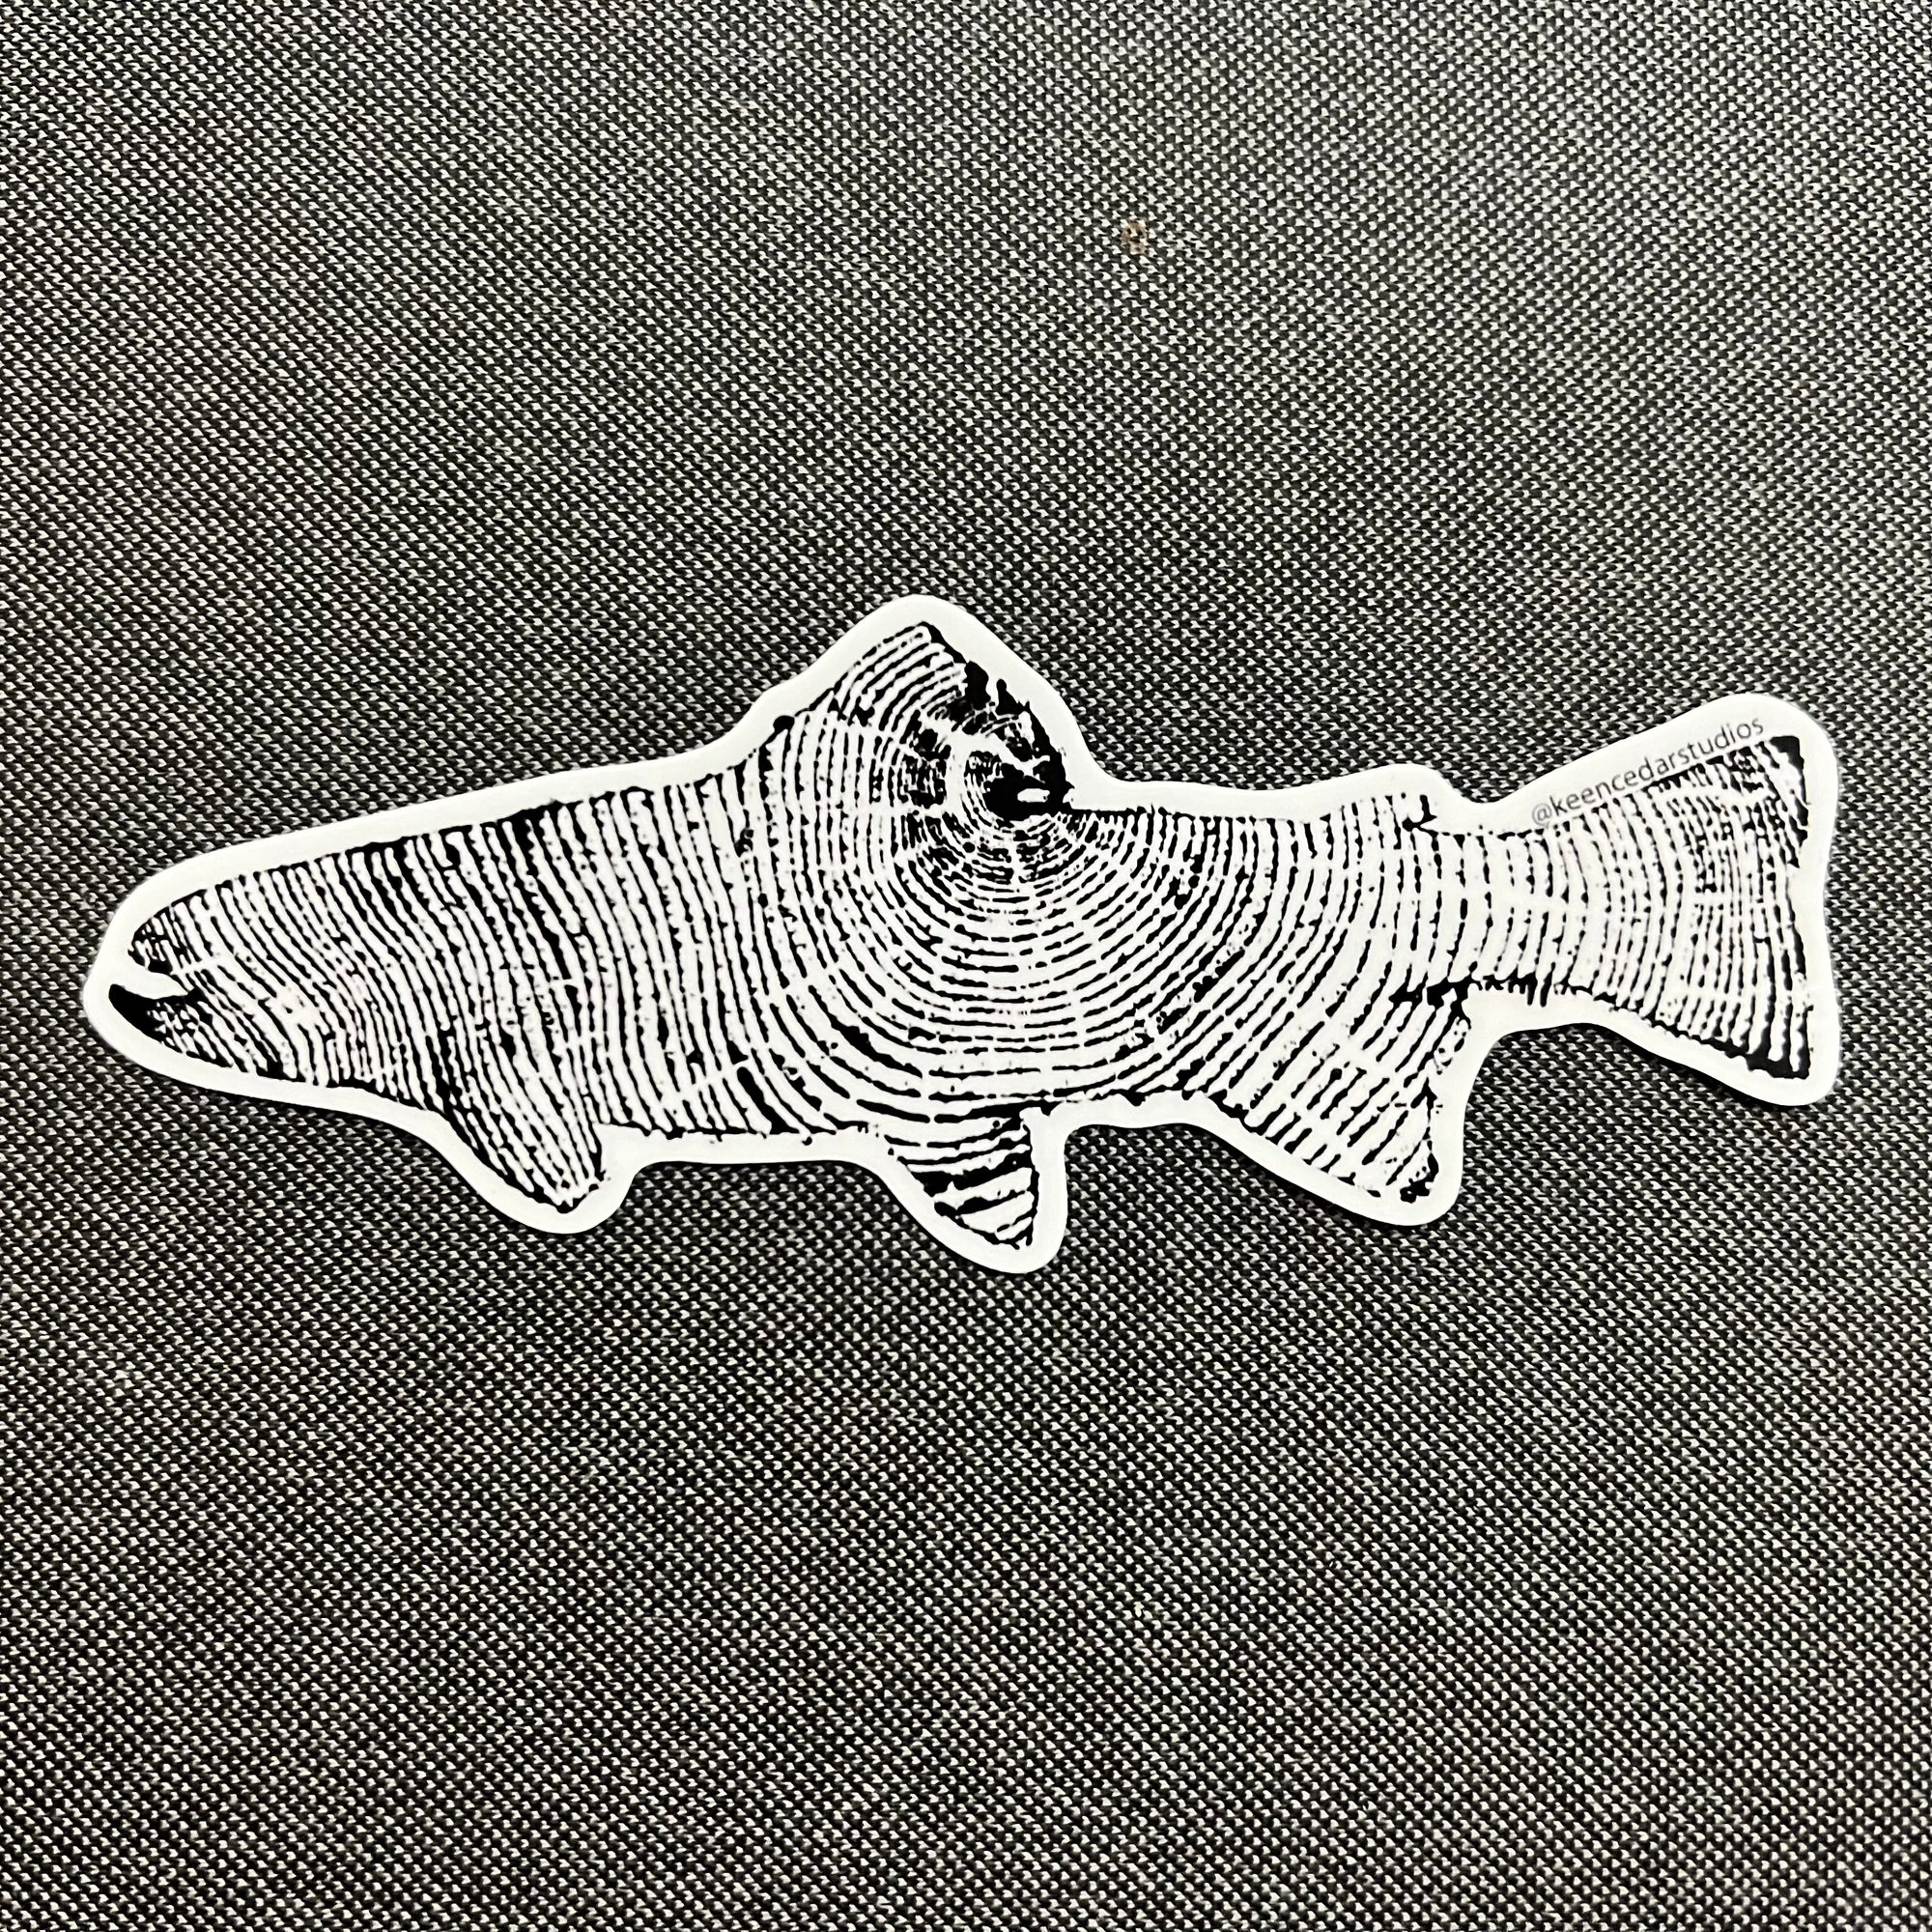 Cedar Fish